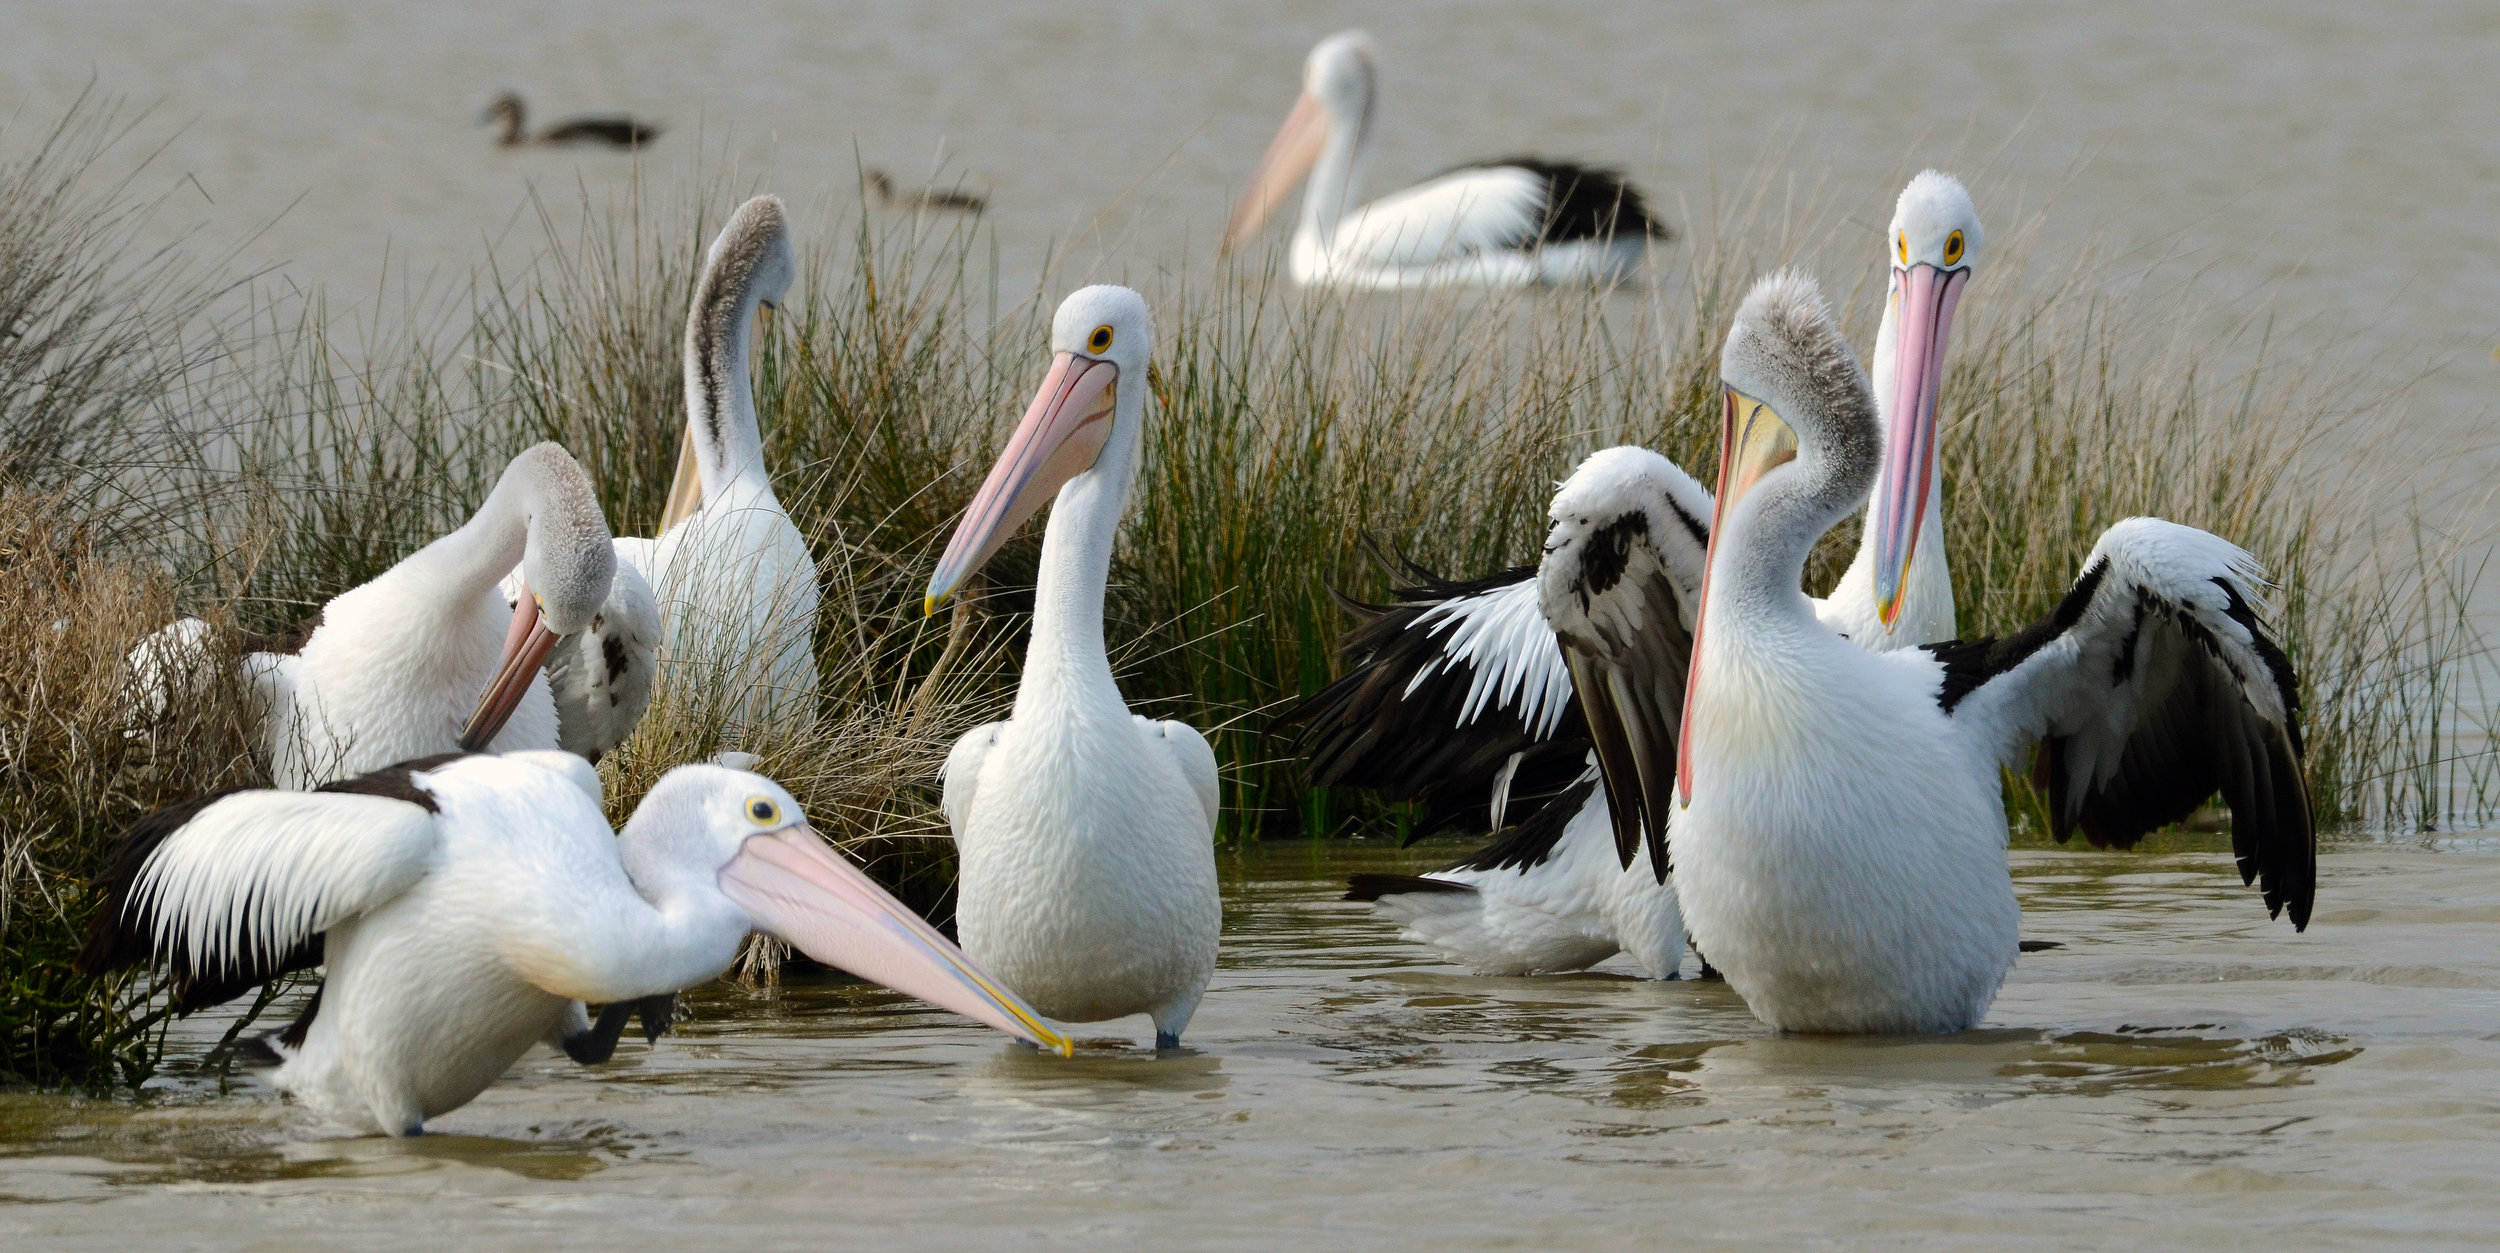  Australian pelicans - 2015 